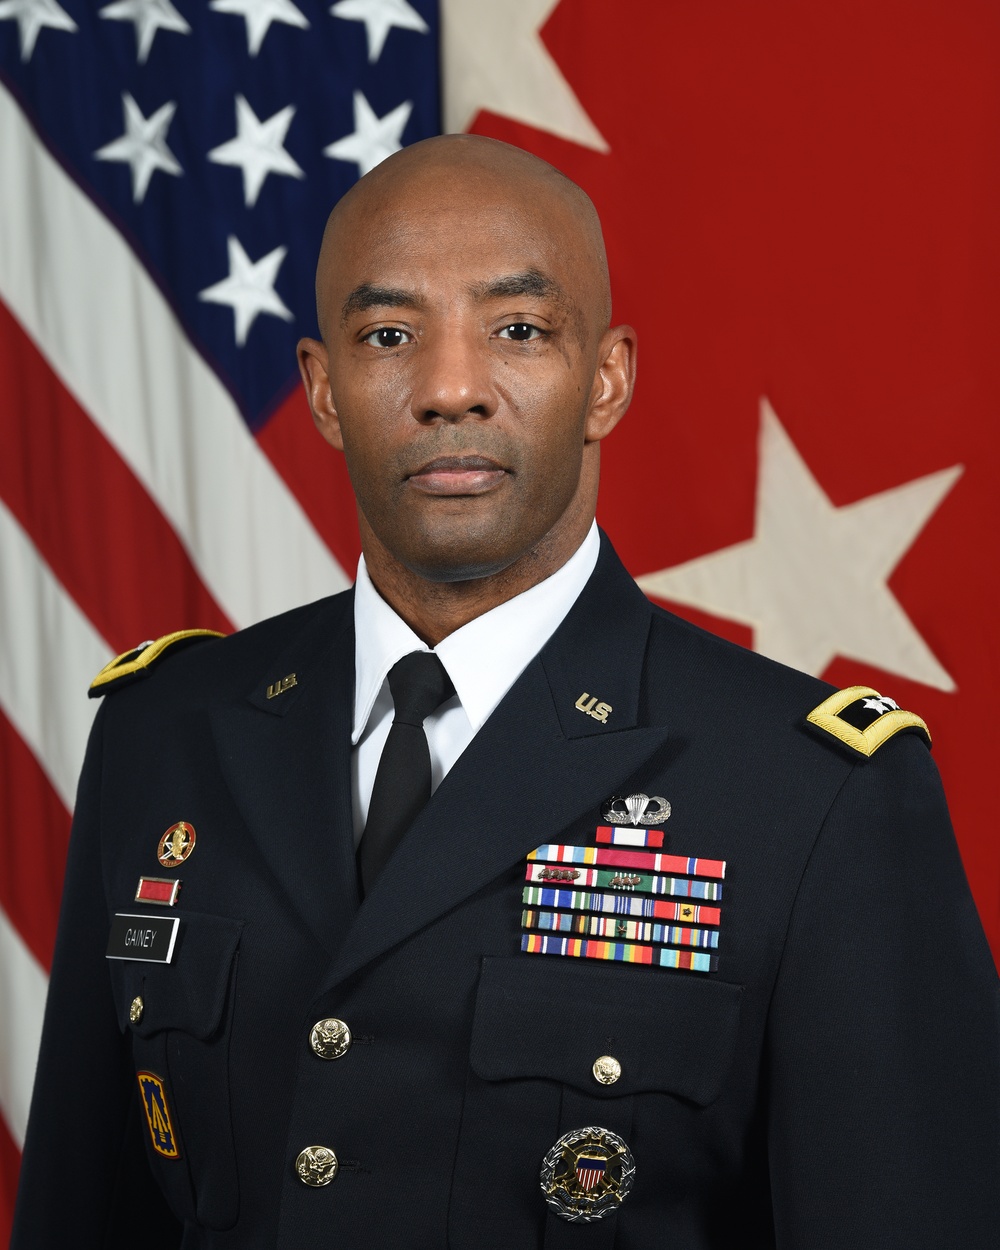 U.S. Army Maj. Gen. Sean A. Gainey